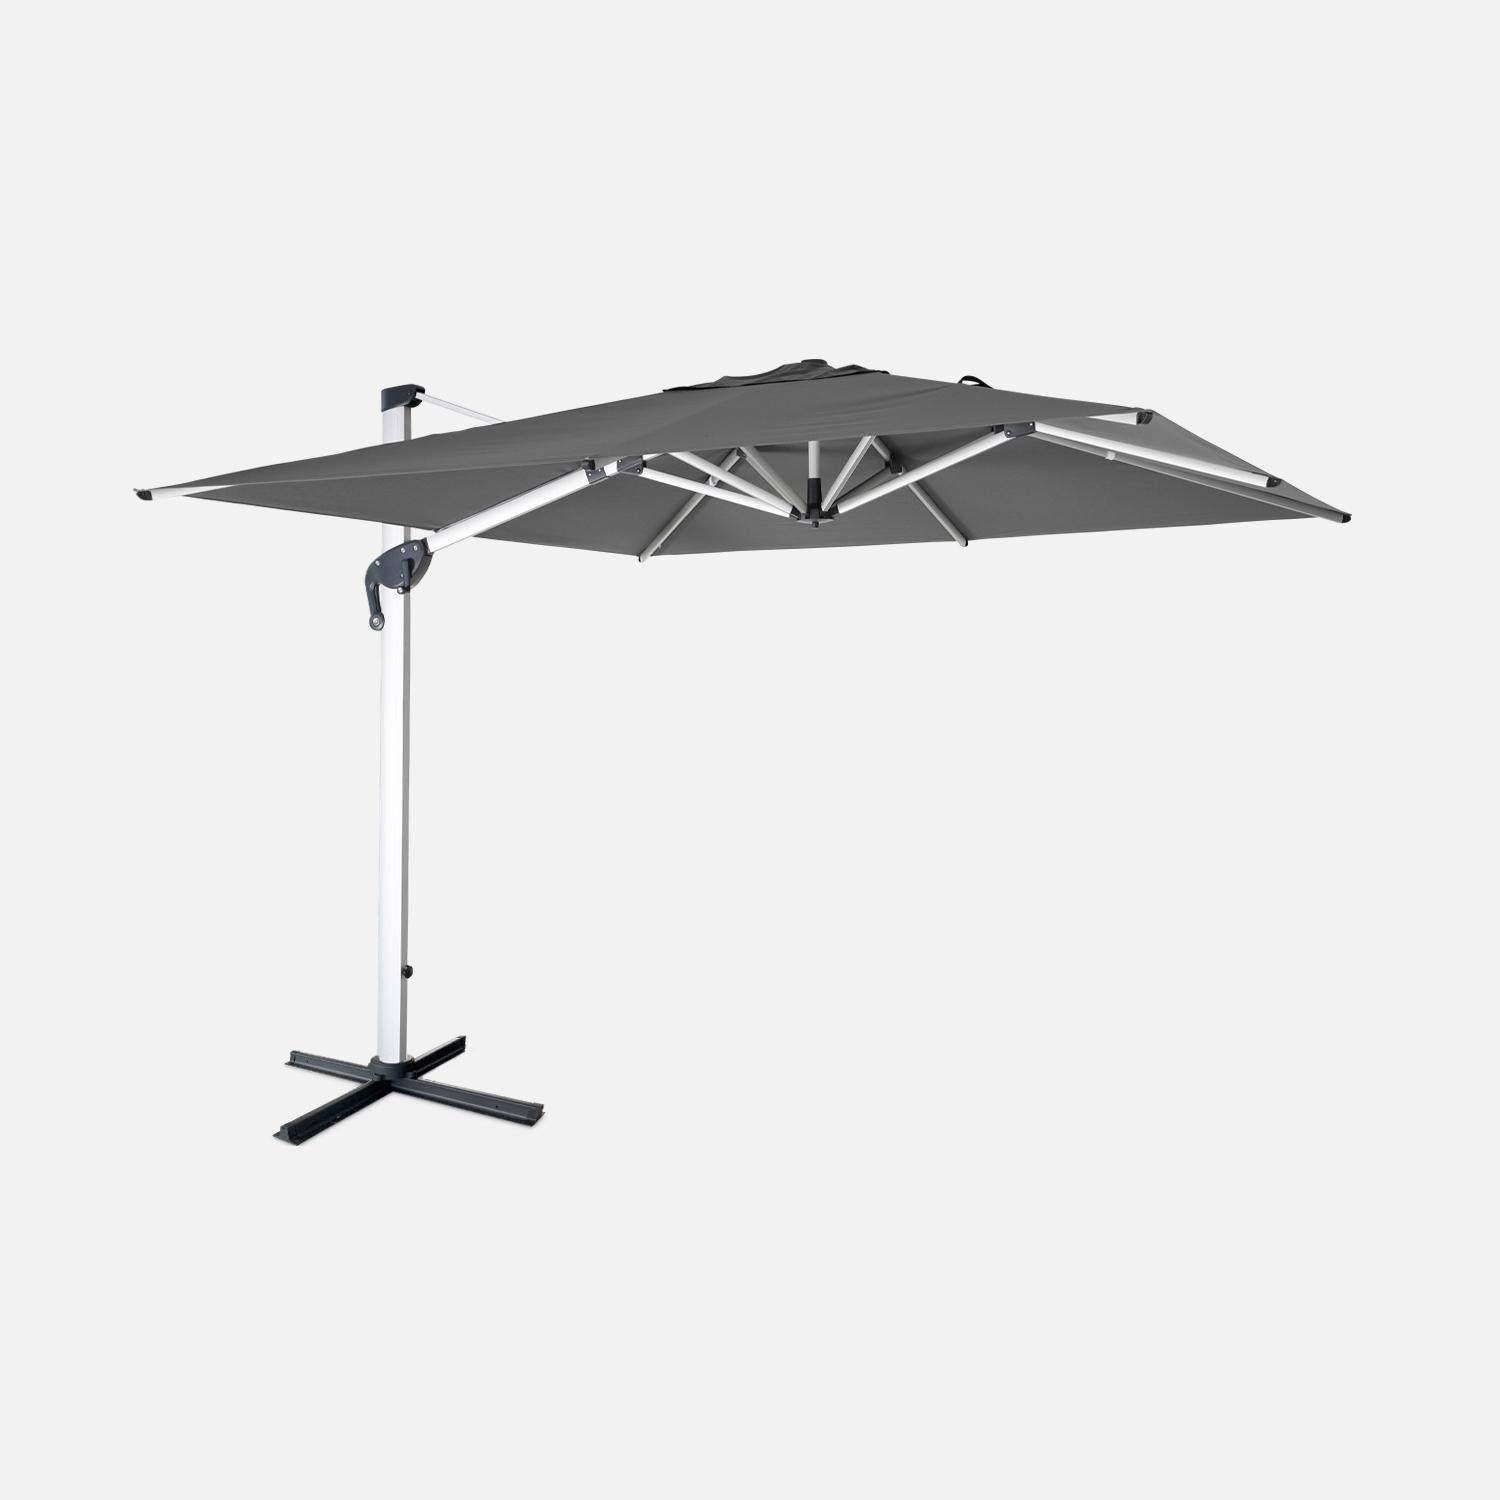 Topkwaliteit parasol, 3x3m, grijs polyester doek, geanodiseerd aluminium frame, hoes inbegrepen,sweeek,Photo1